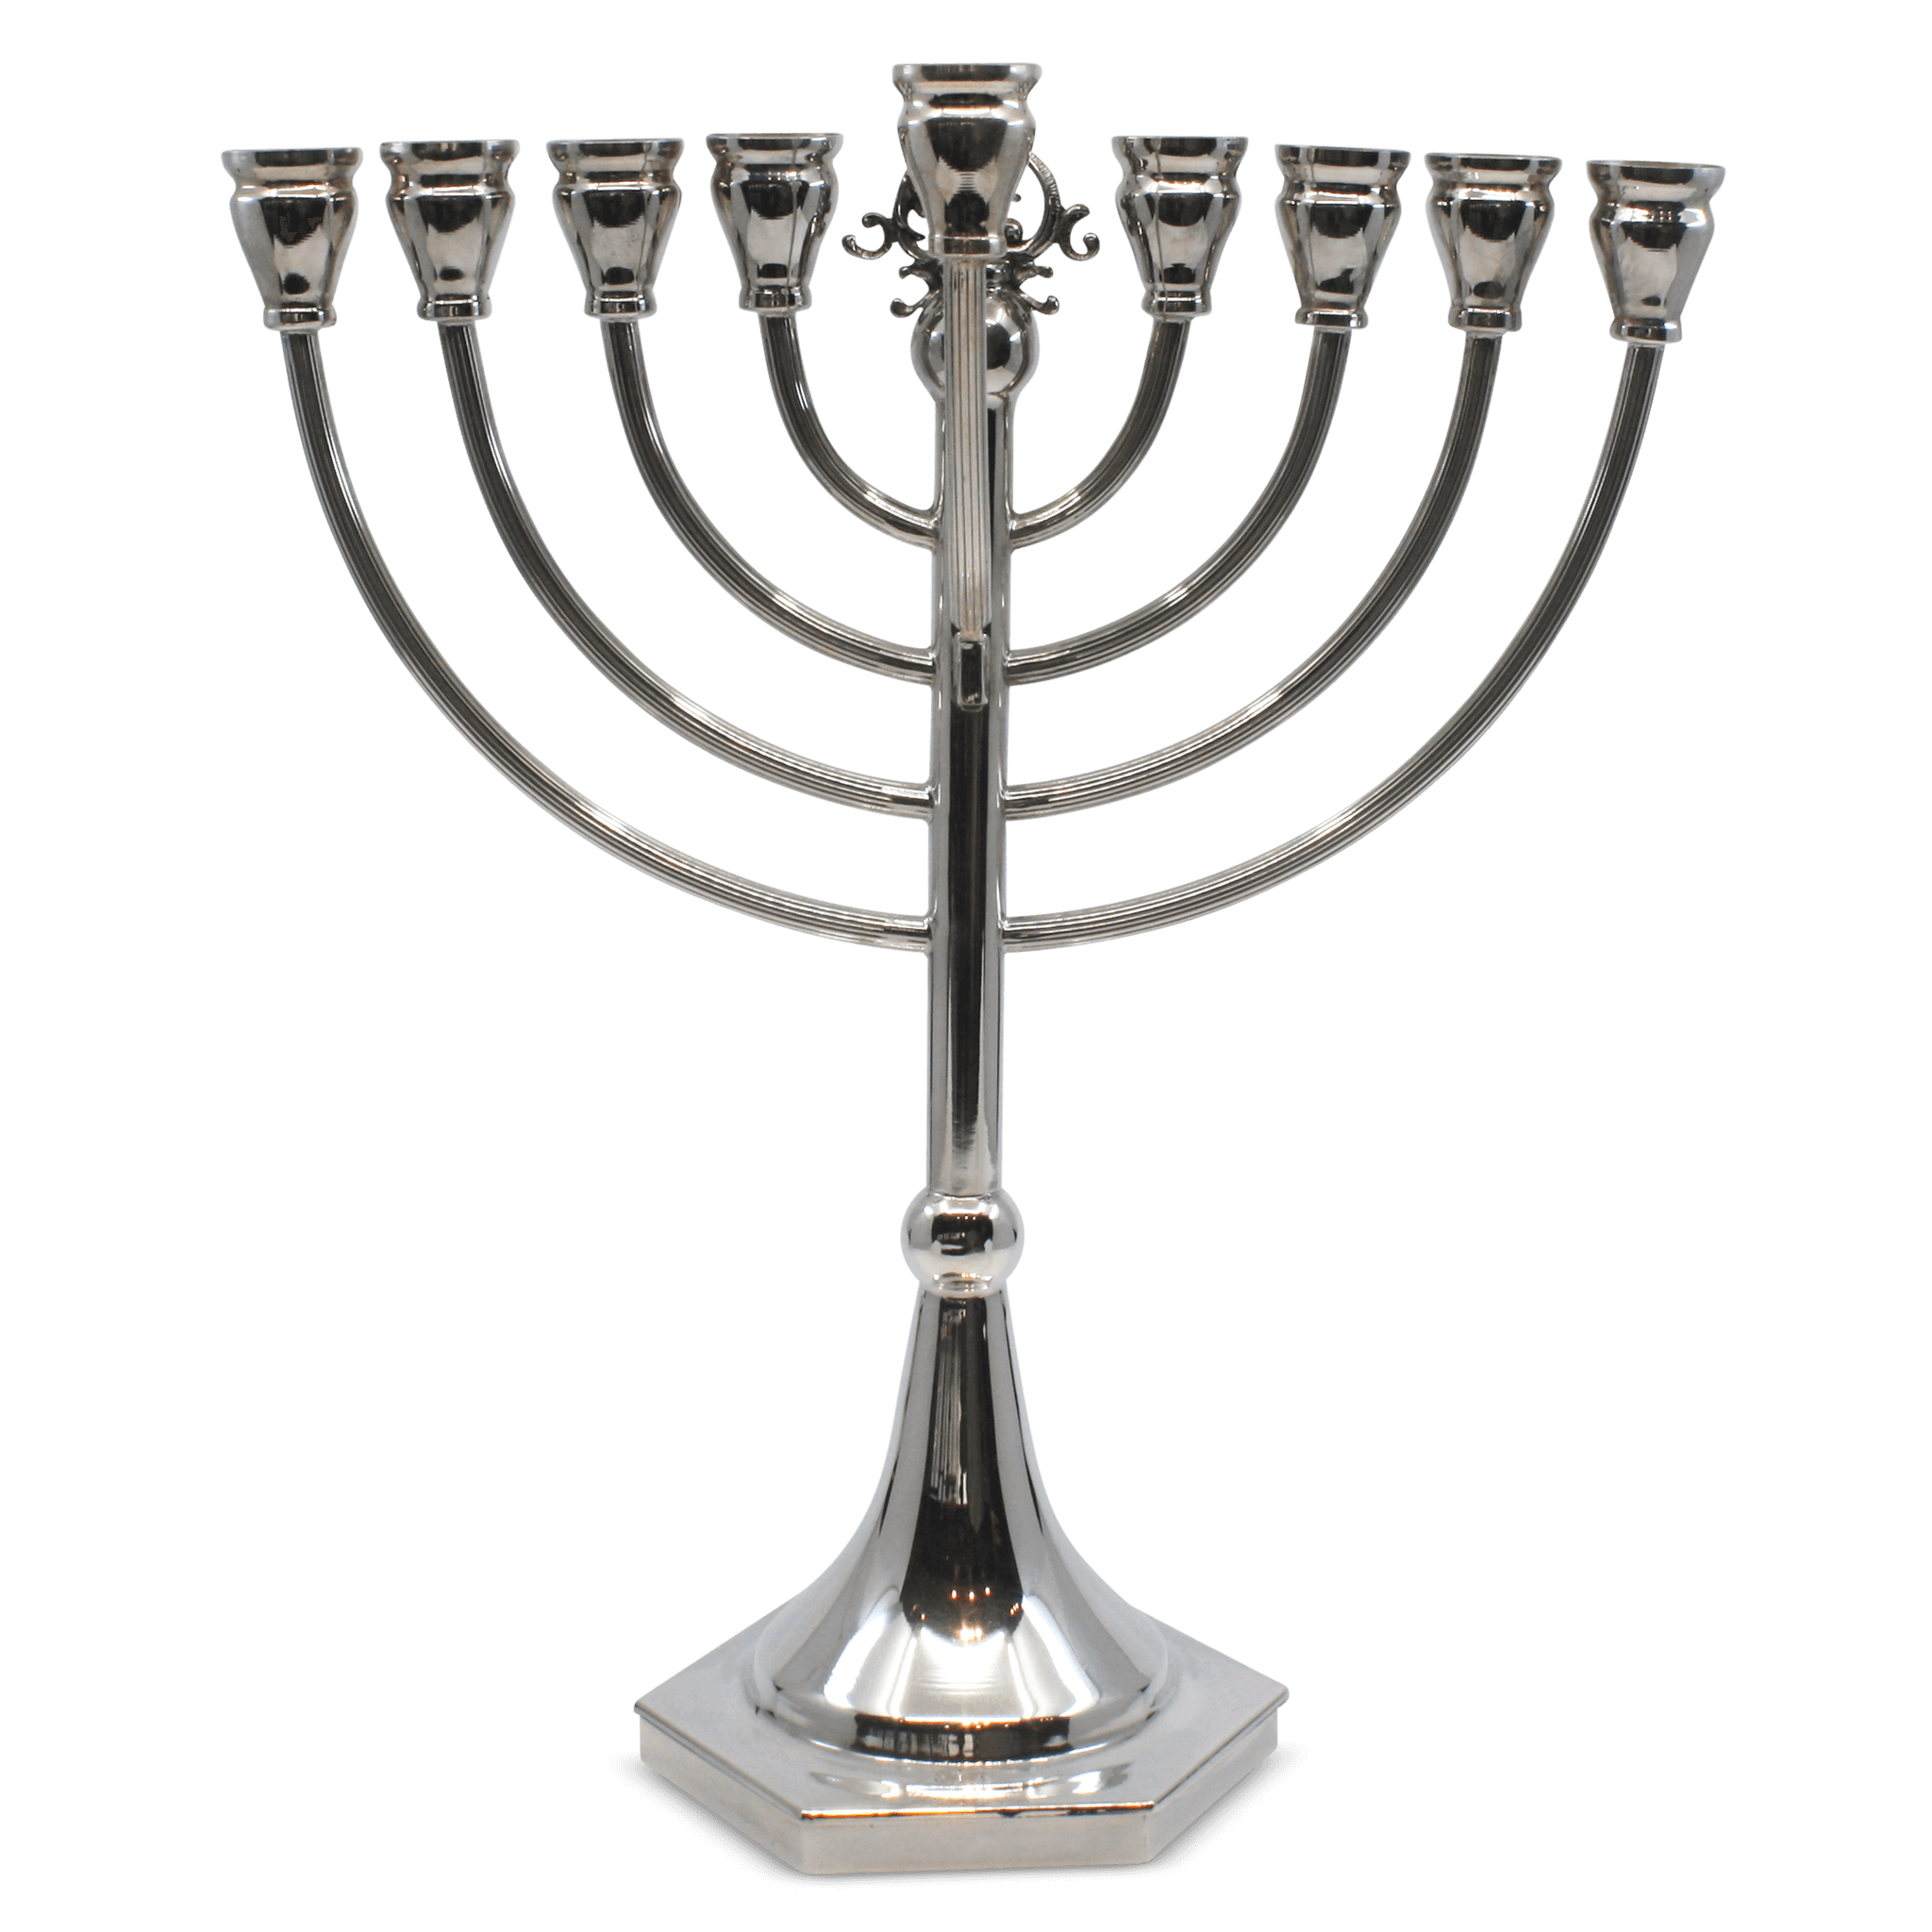 Topaz Silver Jewish Menorah for Hanukkah - Piece By Zion Hadad